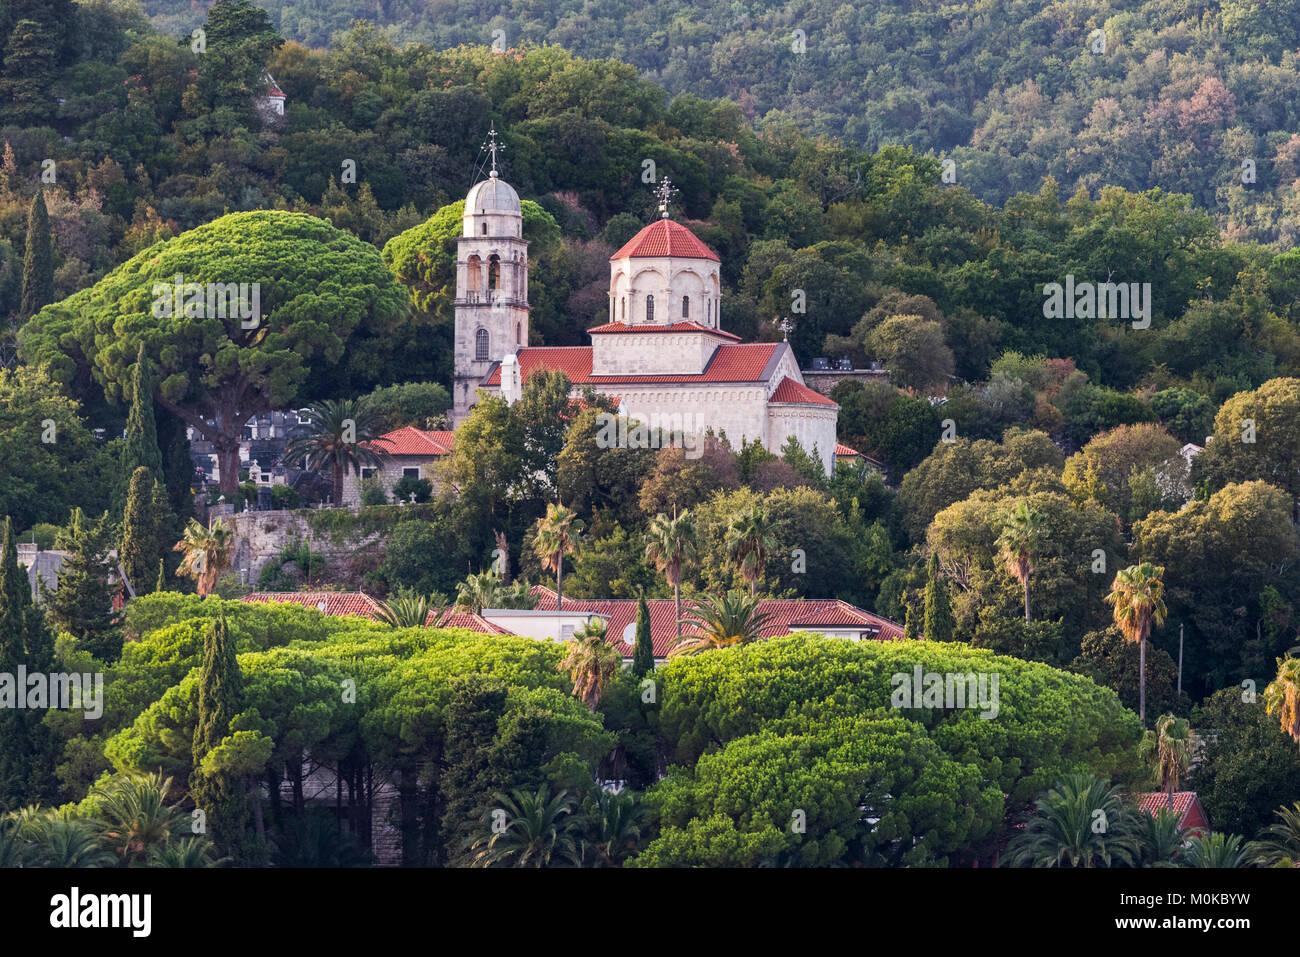 La chiesa e gli edifici sul pendio di una collina circondata da alberi; Herceg Novi, Montenegro Foto Stock